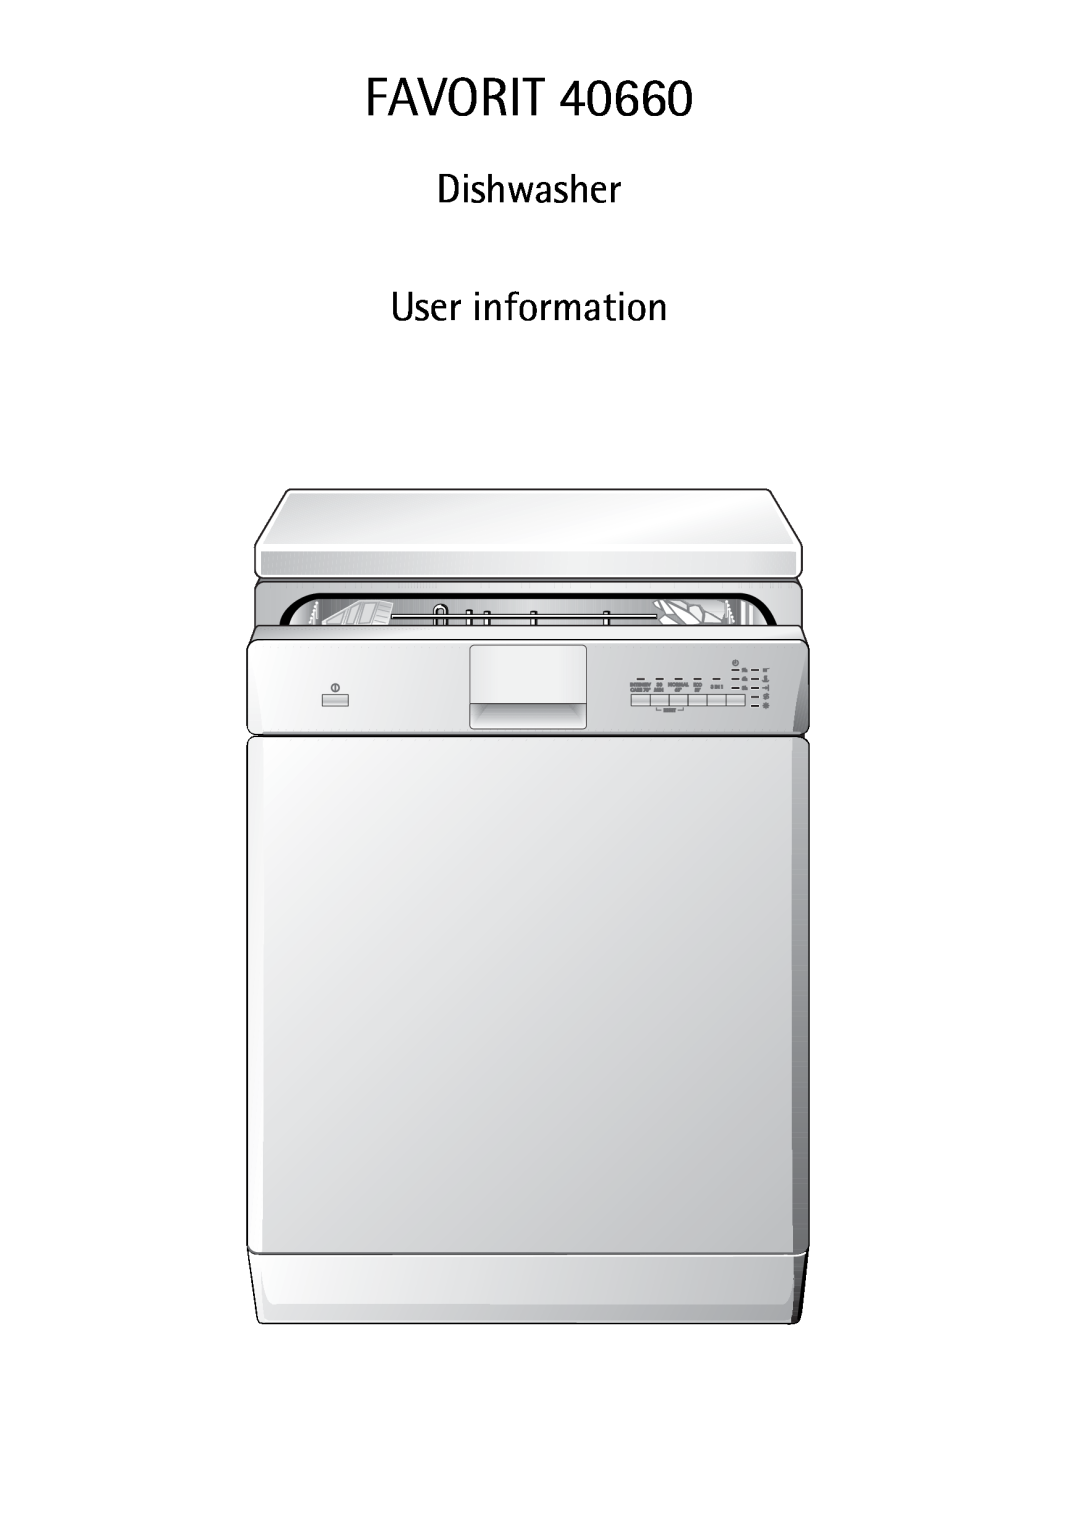 AEG 40660 manual Favorit, Dishwasher User information 